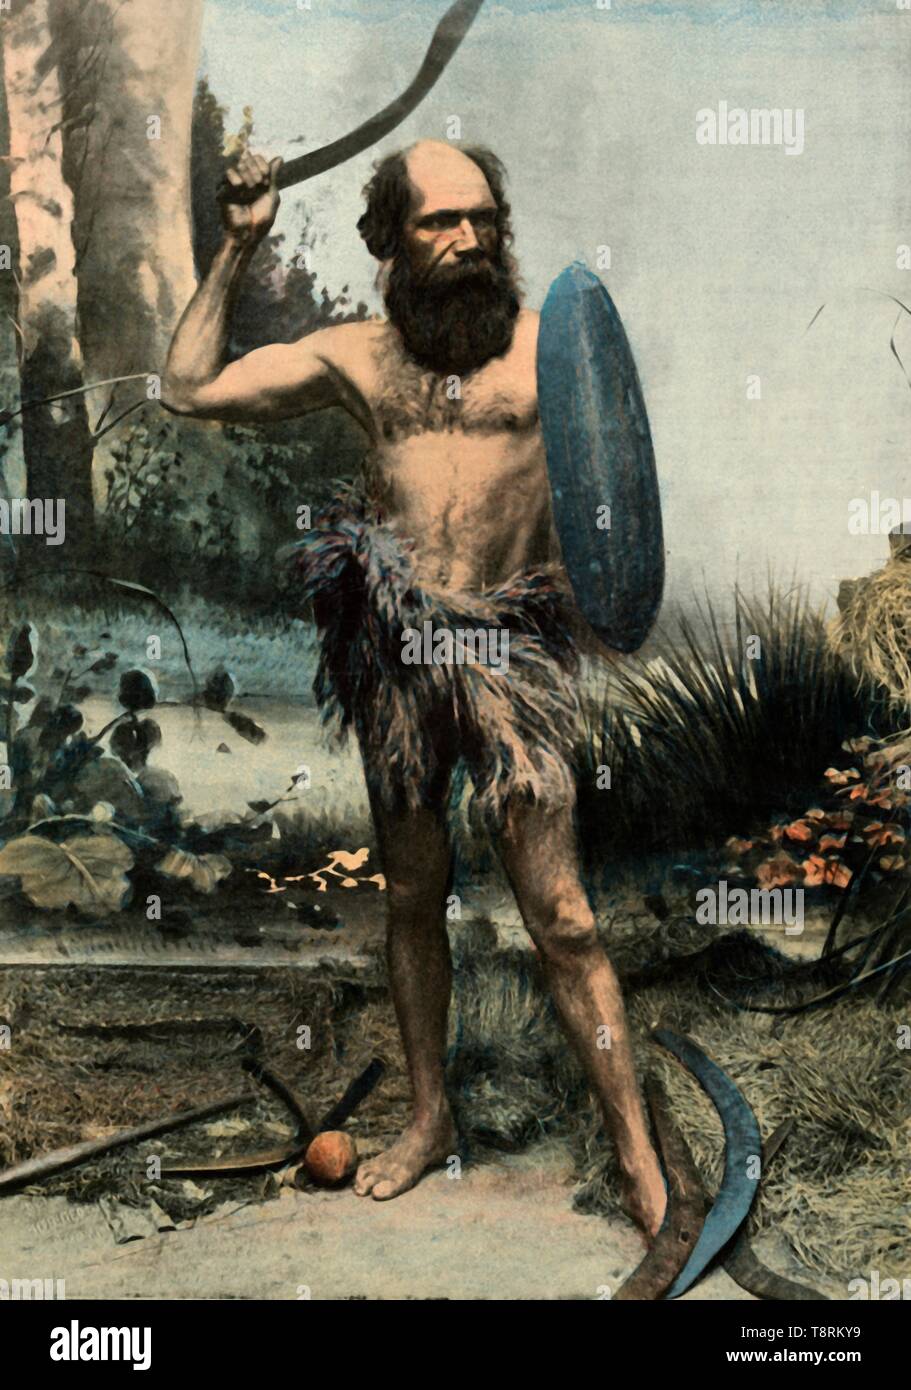 "Indigene Australien Arme Du Boumerang', (Aborigine bewaffnet mit einem Boomerang), 1900. Schöpfer: Unbekannt. Stockfoto